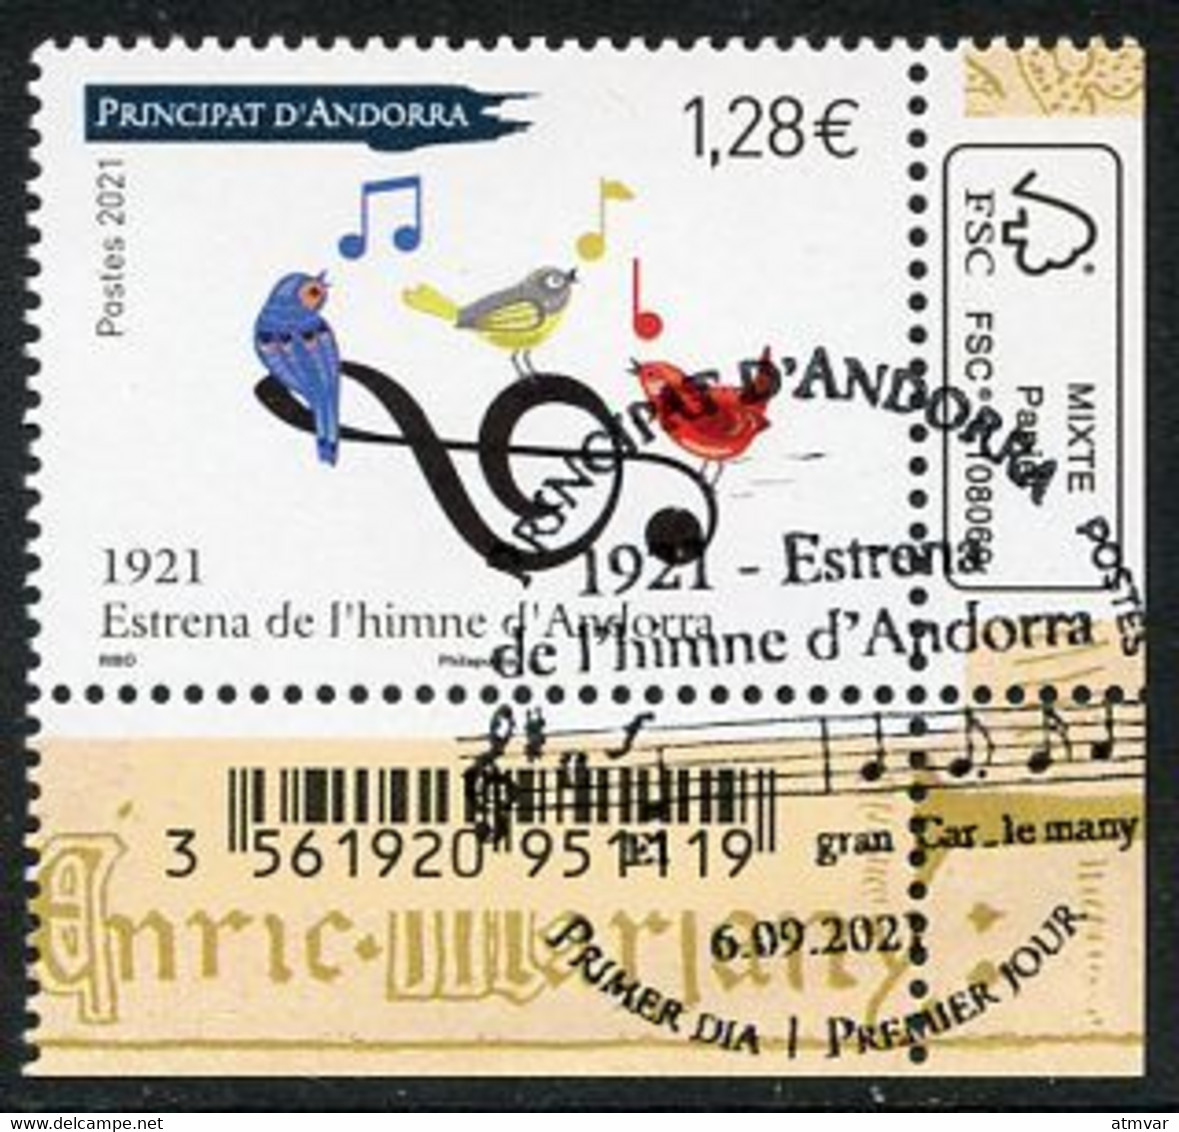 ANDORRA (2021) 1921 Estrena De L'himne D'Andorra, Himno, Music, Anthem, Hymne, Musique, Oiseau, Birds, Notes - First Day - Used Stamps